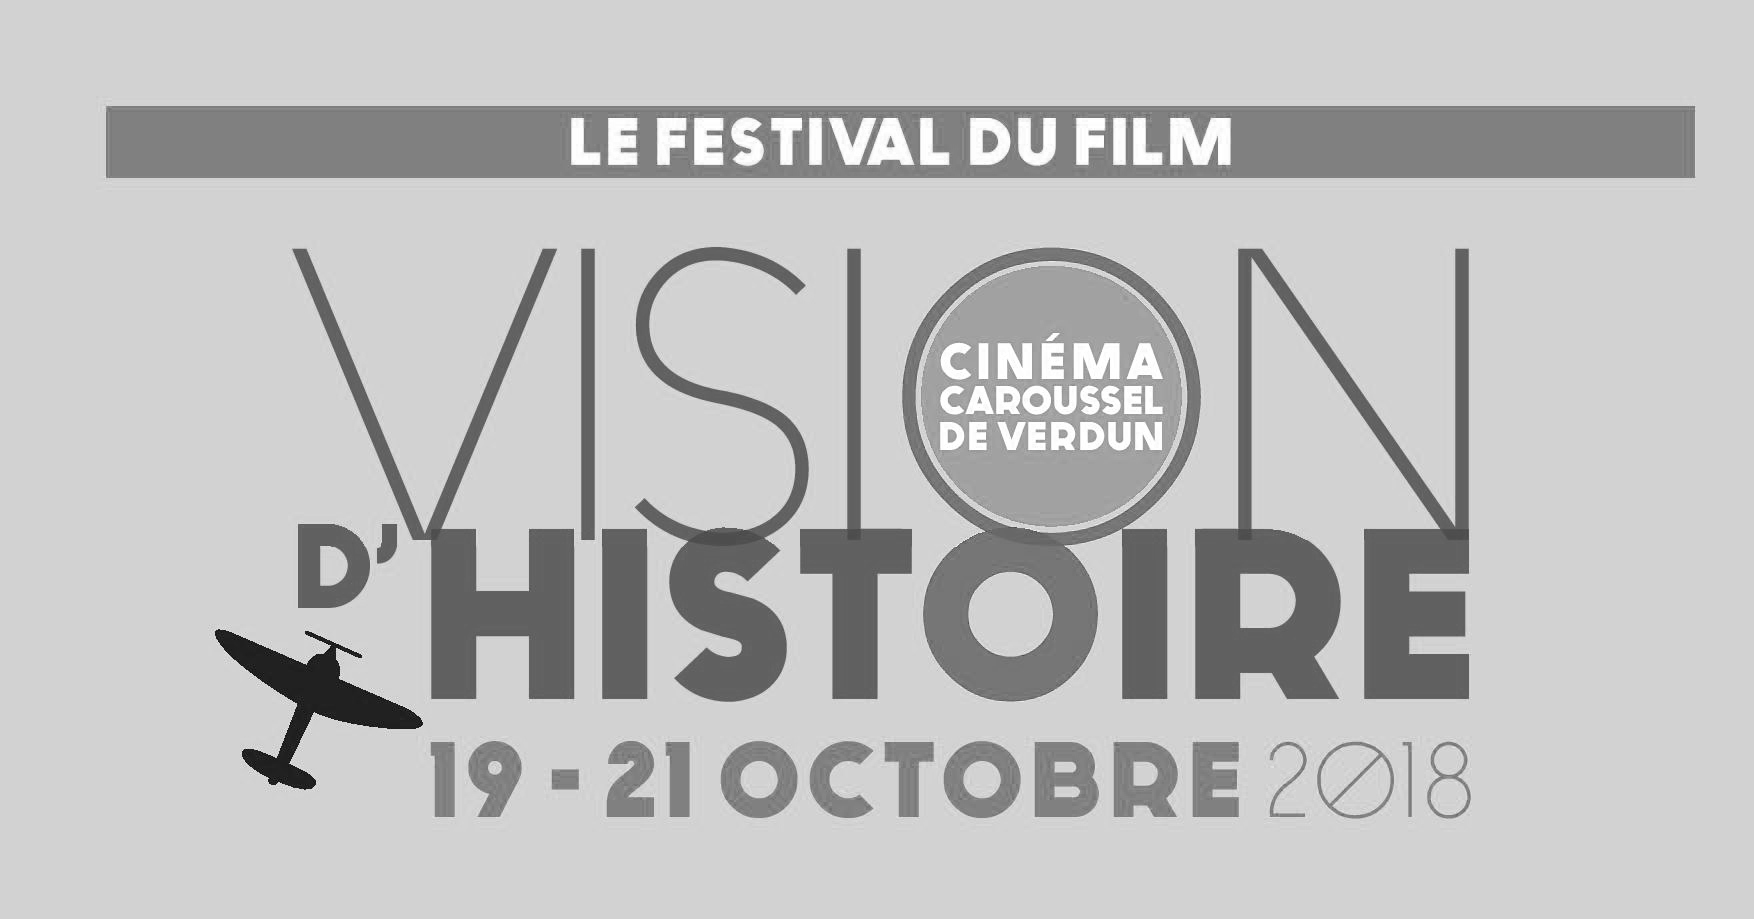 Festival du film vision d'Histoire de Verdun